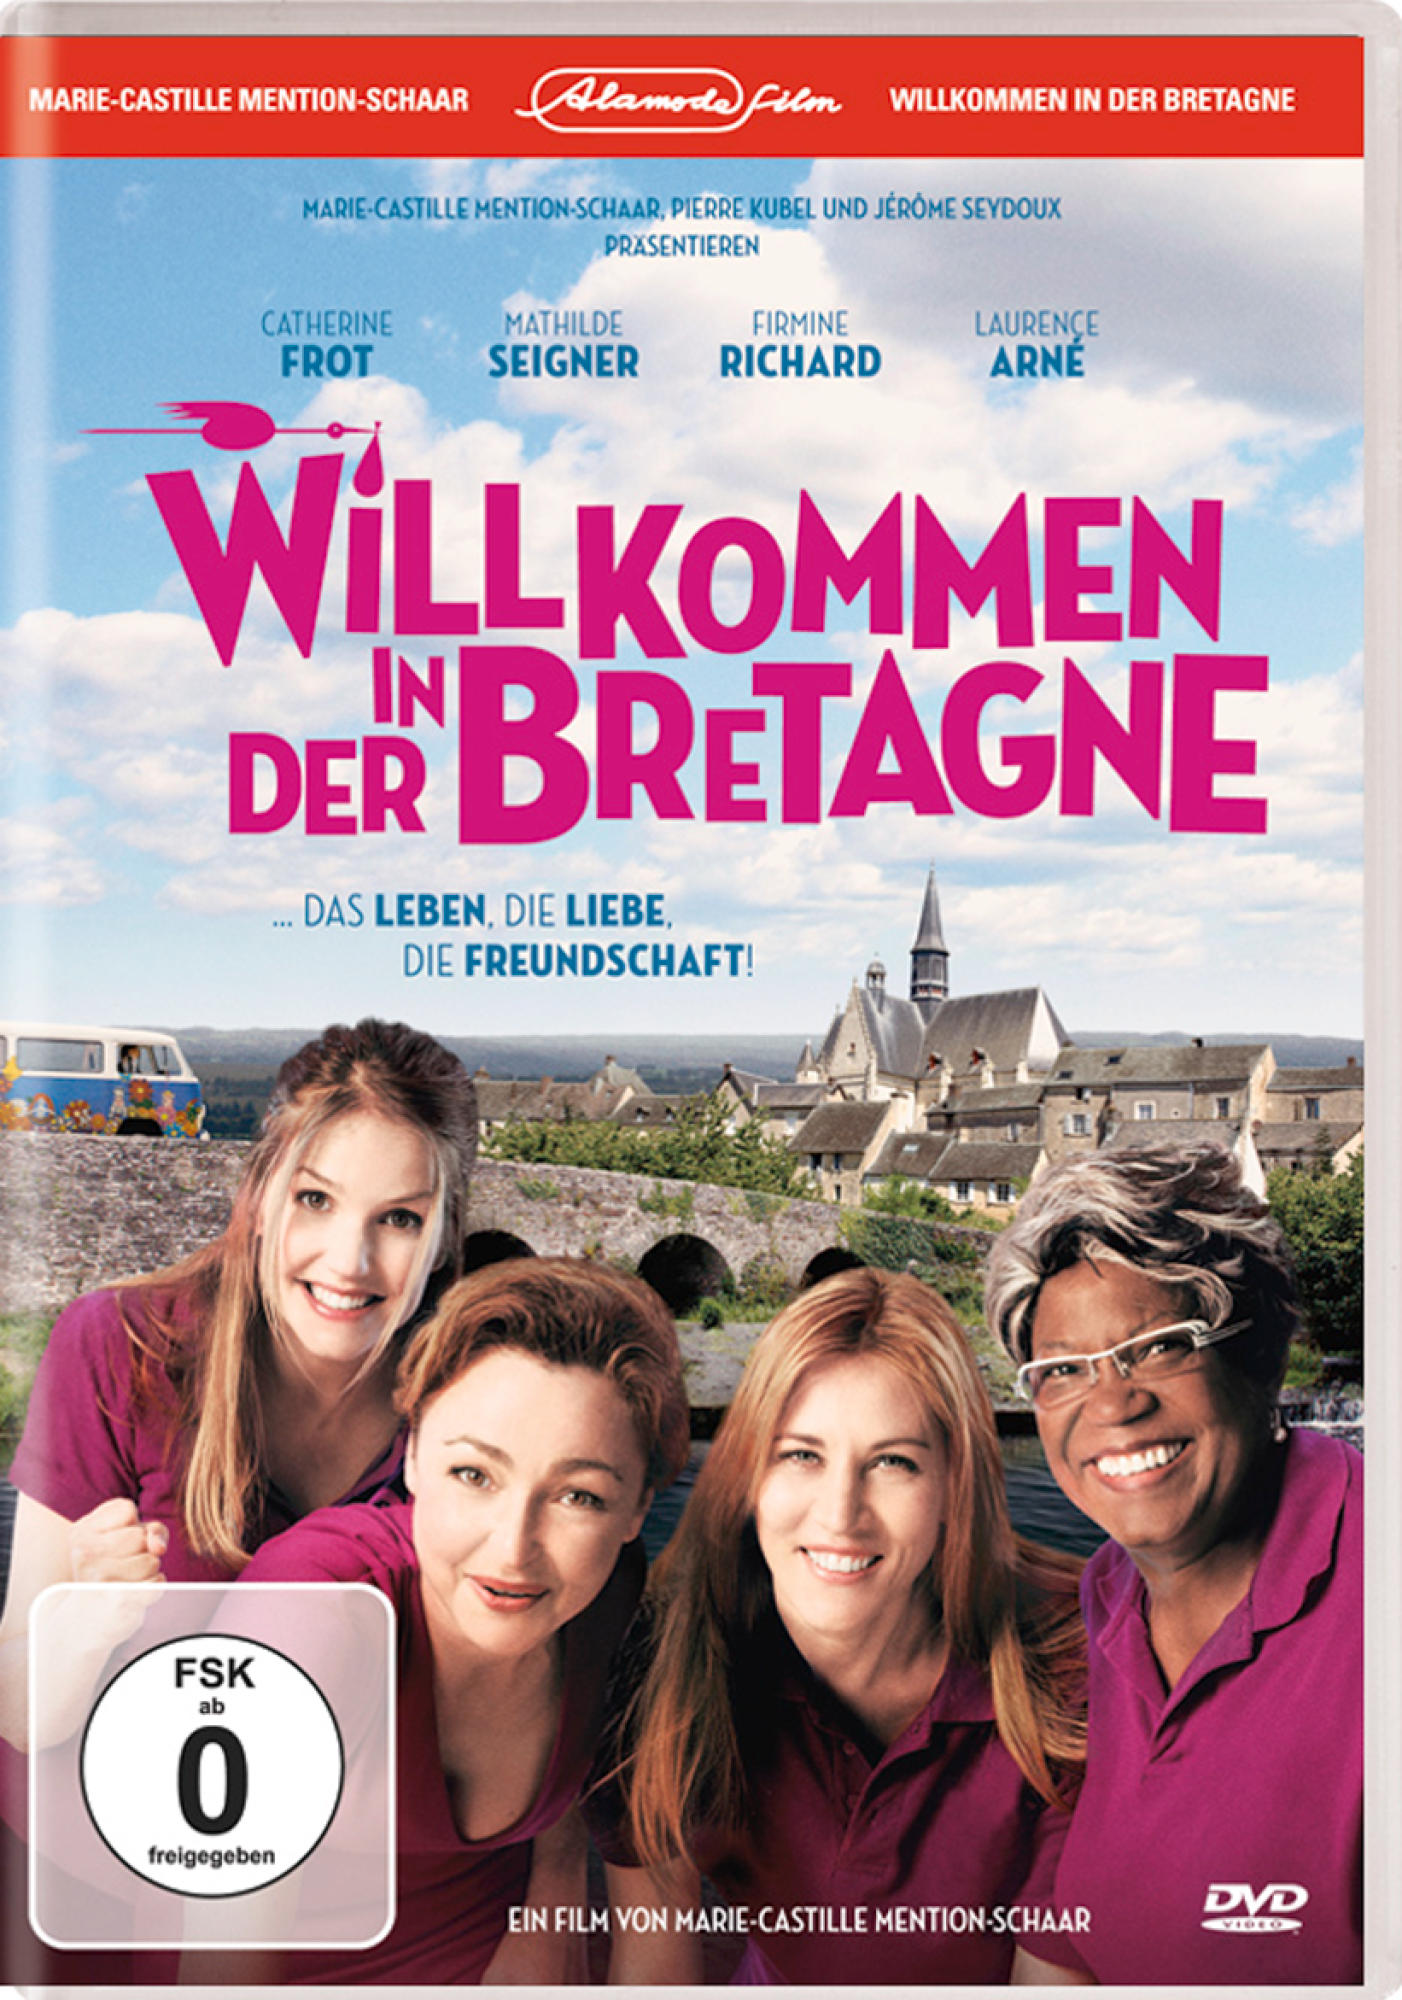 Willkommen Bretagne in DVD der